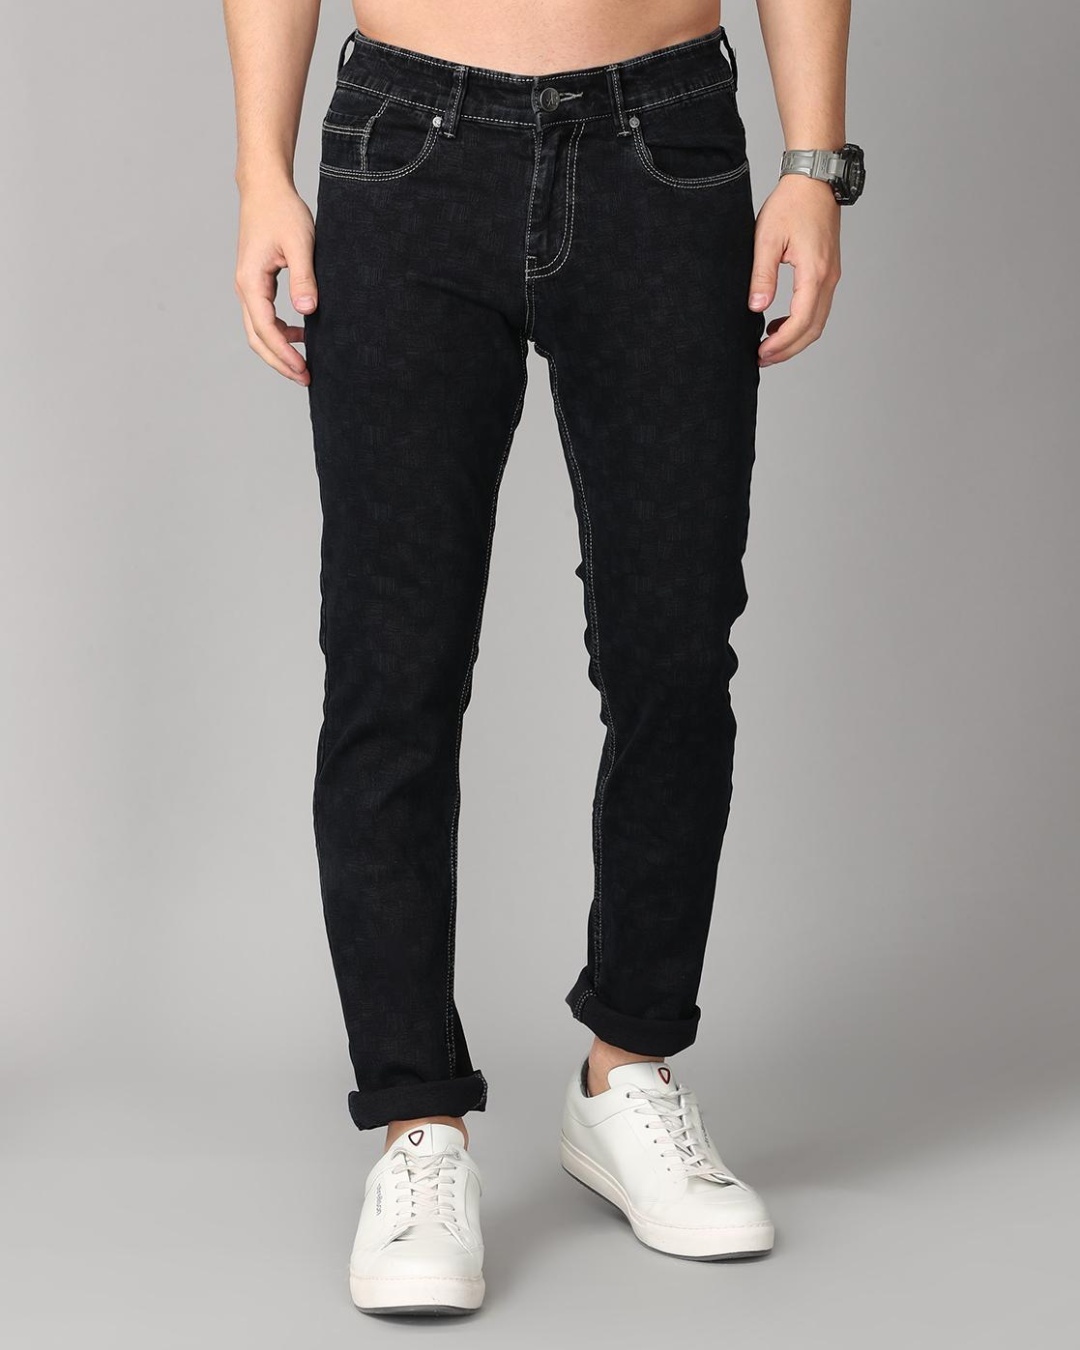 Buy Men's Black Self Design Slim Fit Jeans for Men Black Online at Bewakoof